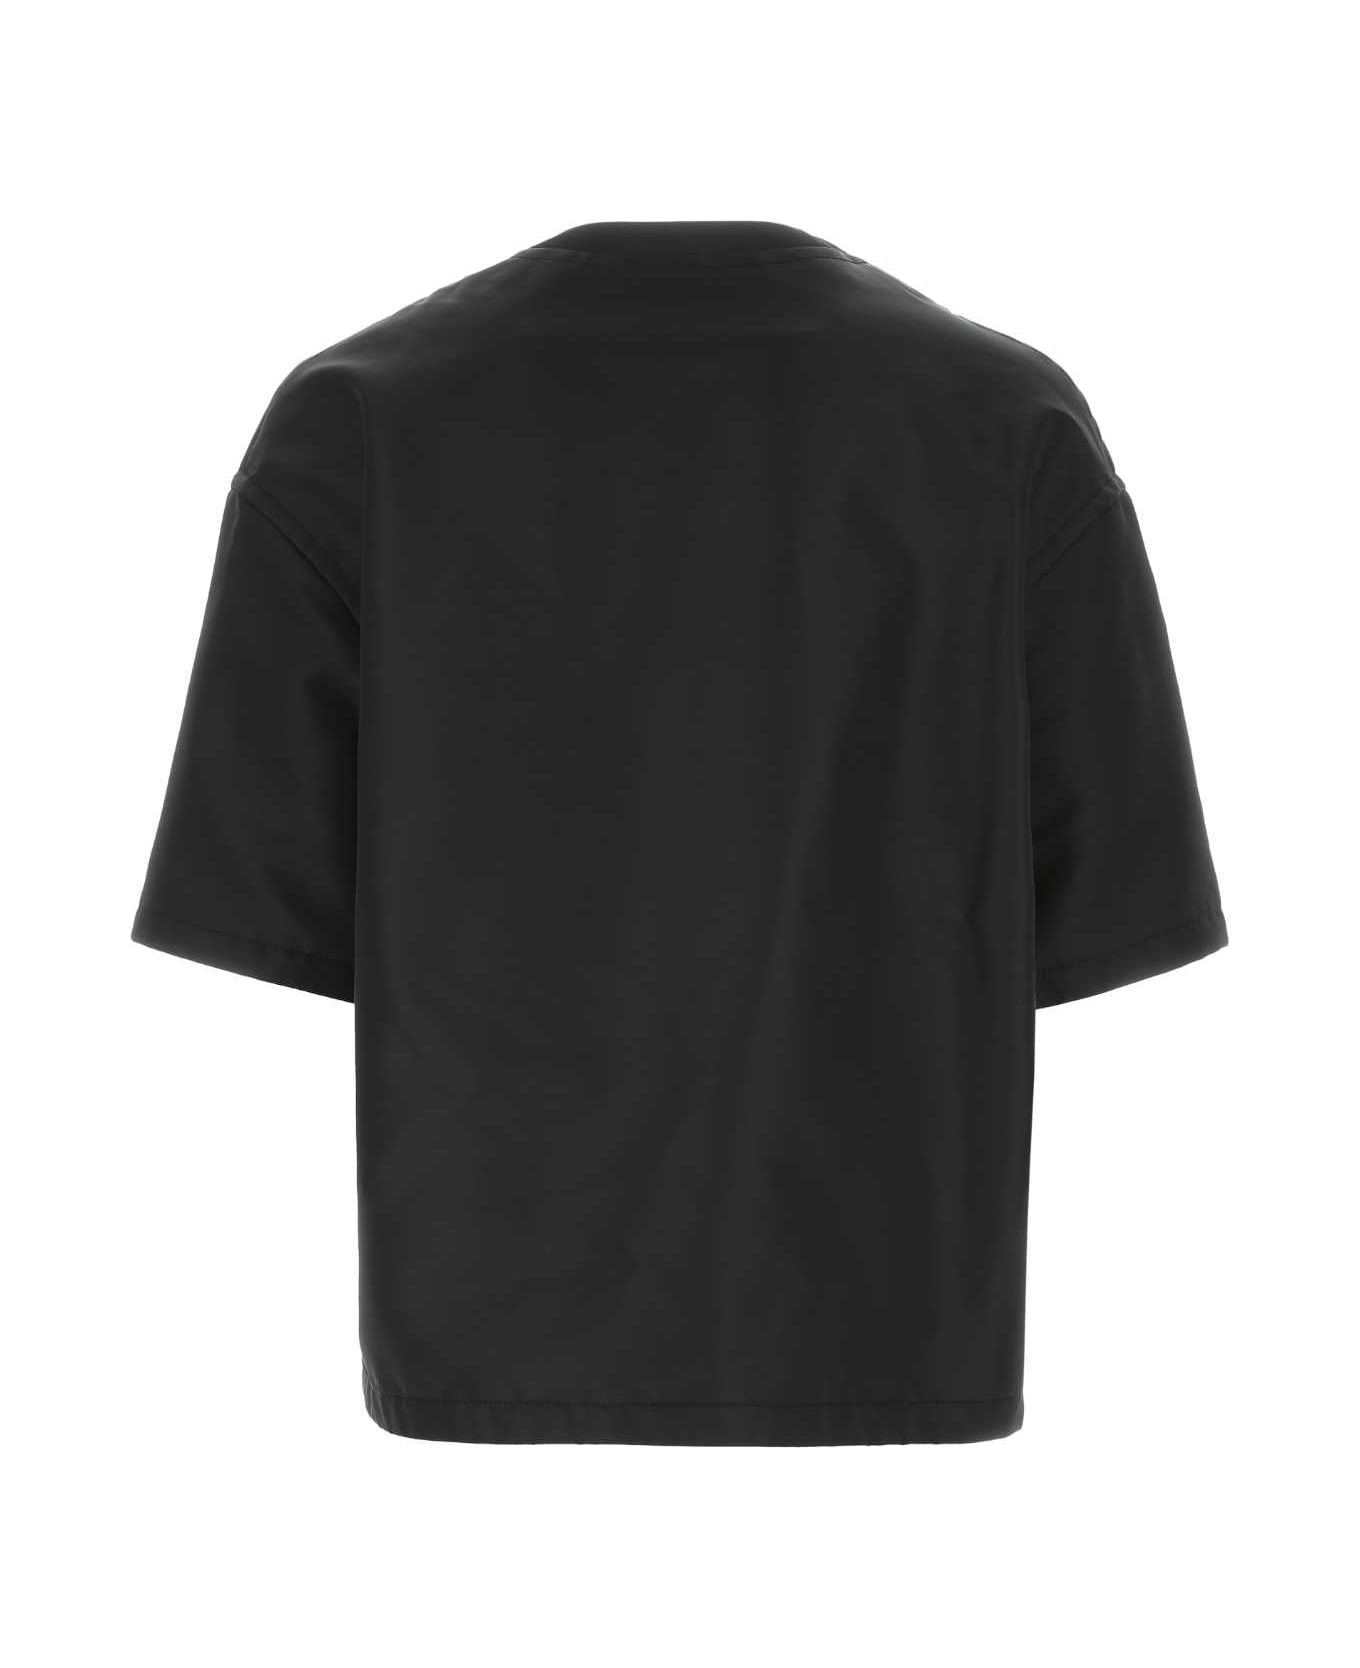 Valentino Garavani Black Nylon Oversize Shirt - 0NO